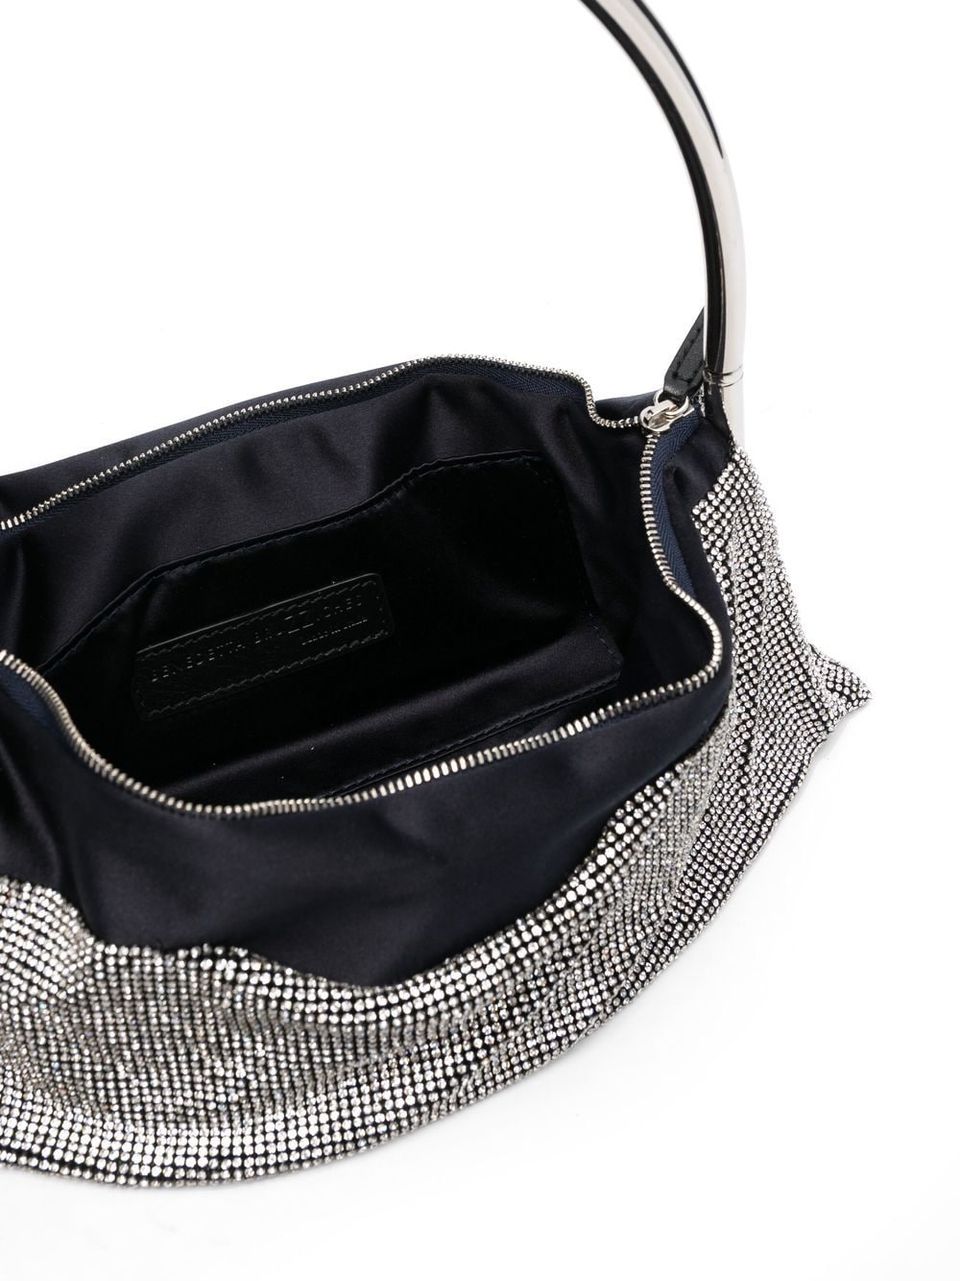 'Destino' handbag with crystals